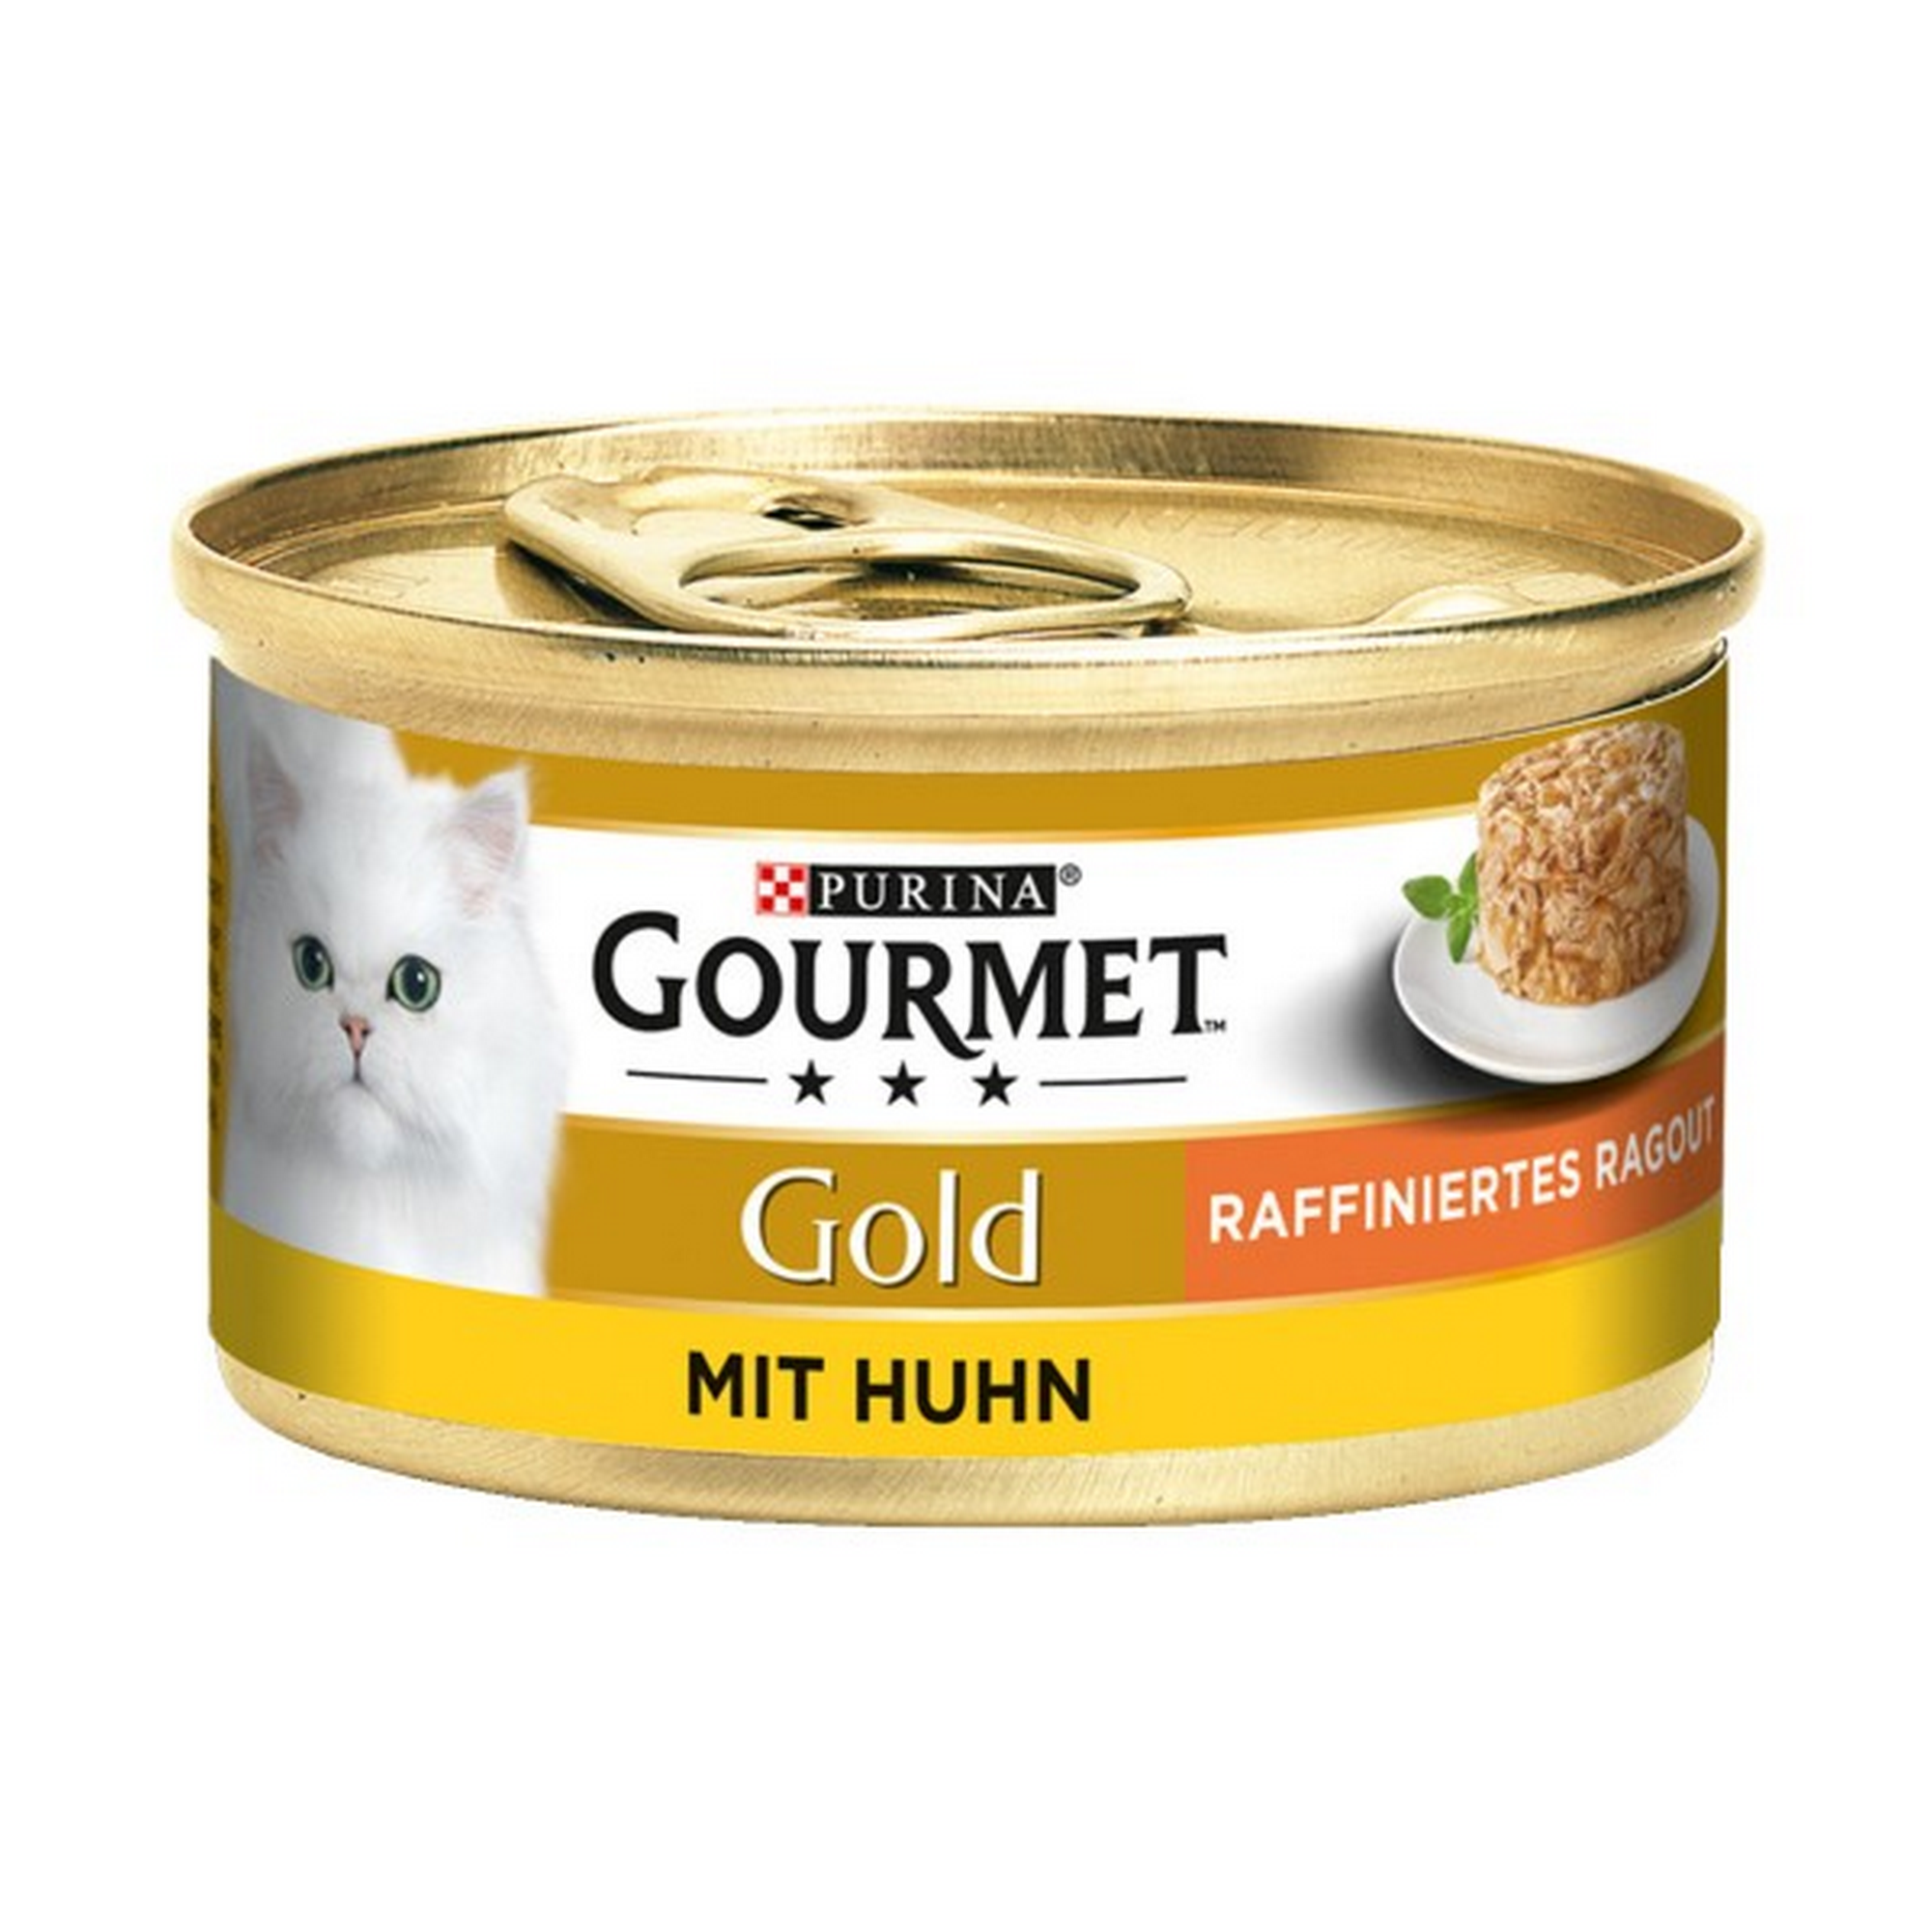 Katzennassfutter 'Gold' raffiniertes Ragout mit Huhn 85 g + product picture